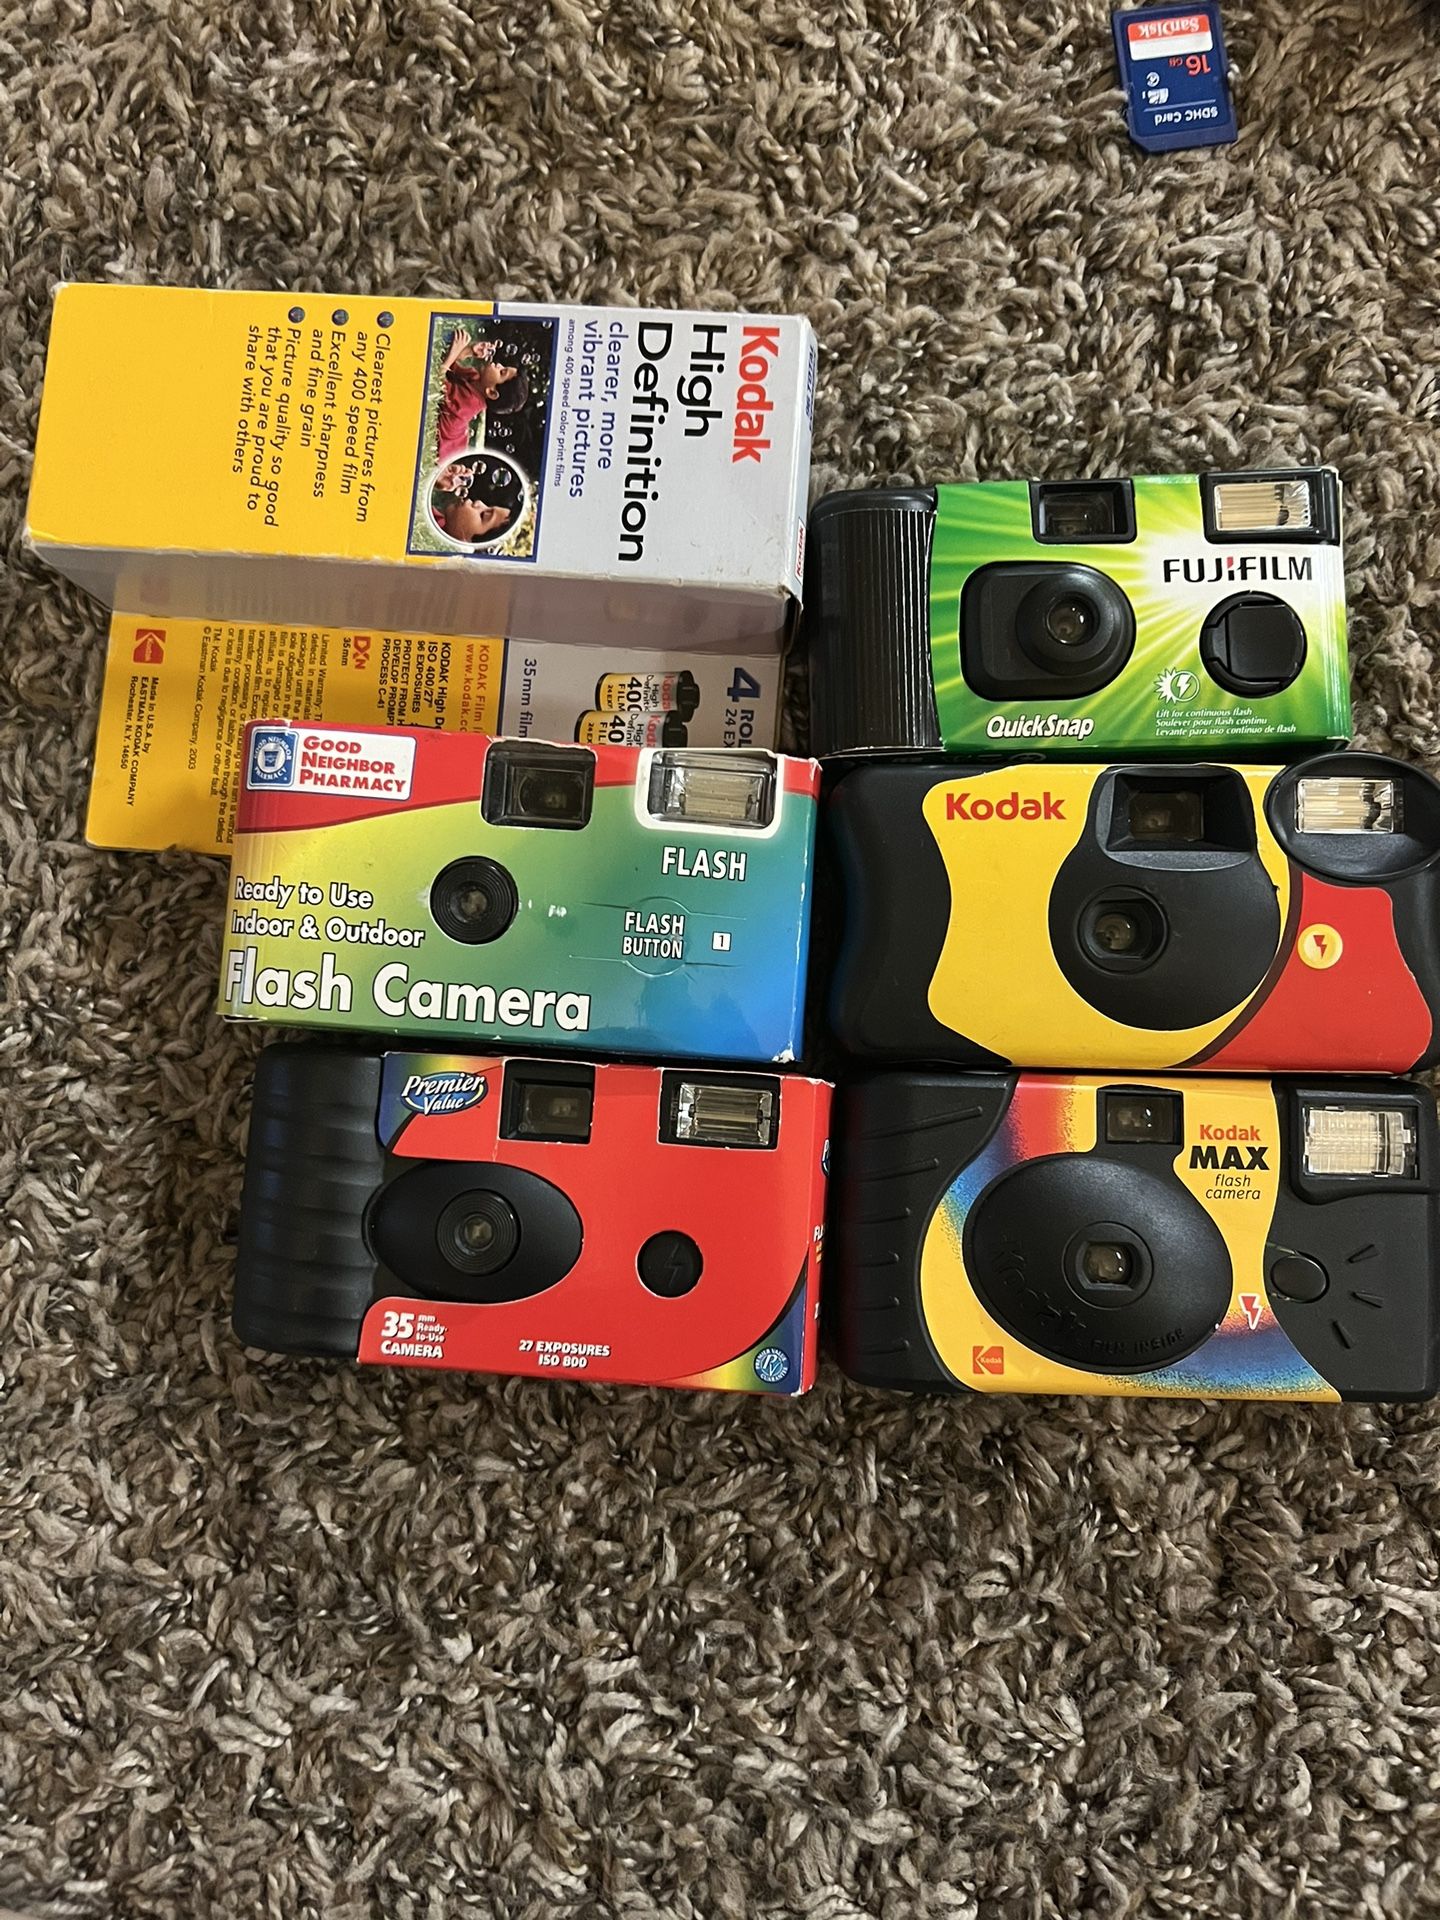 several new cameras plus bonus 